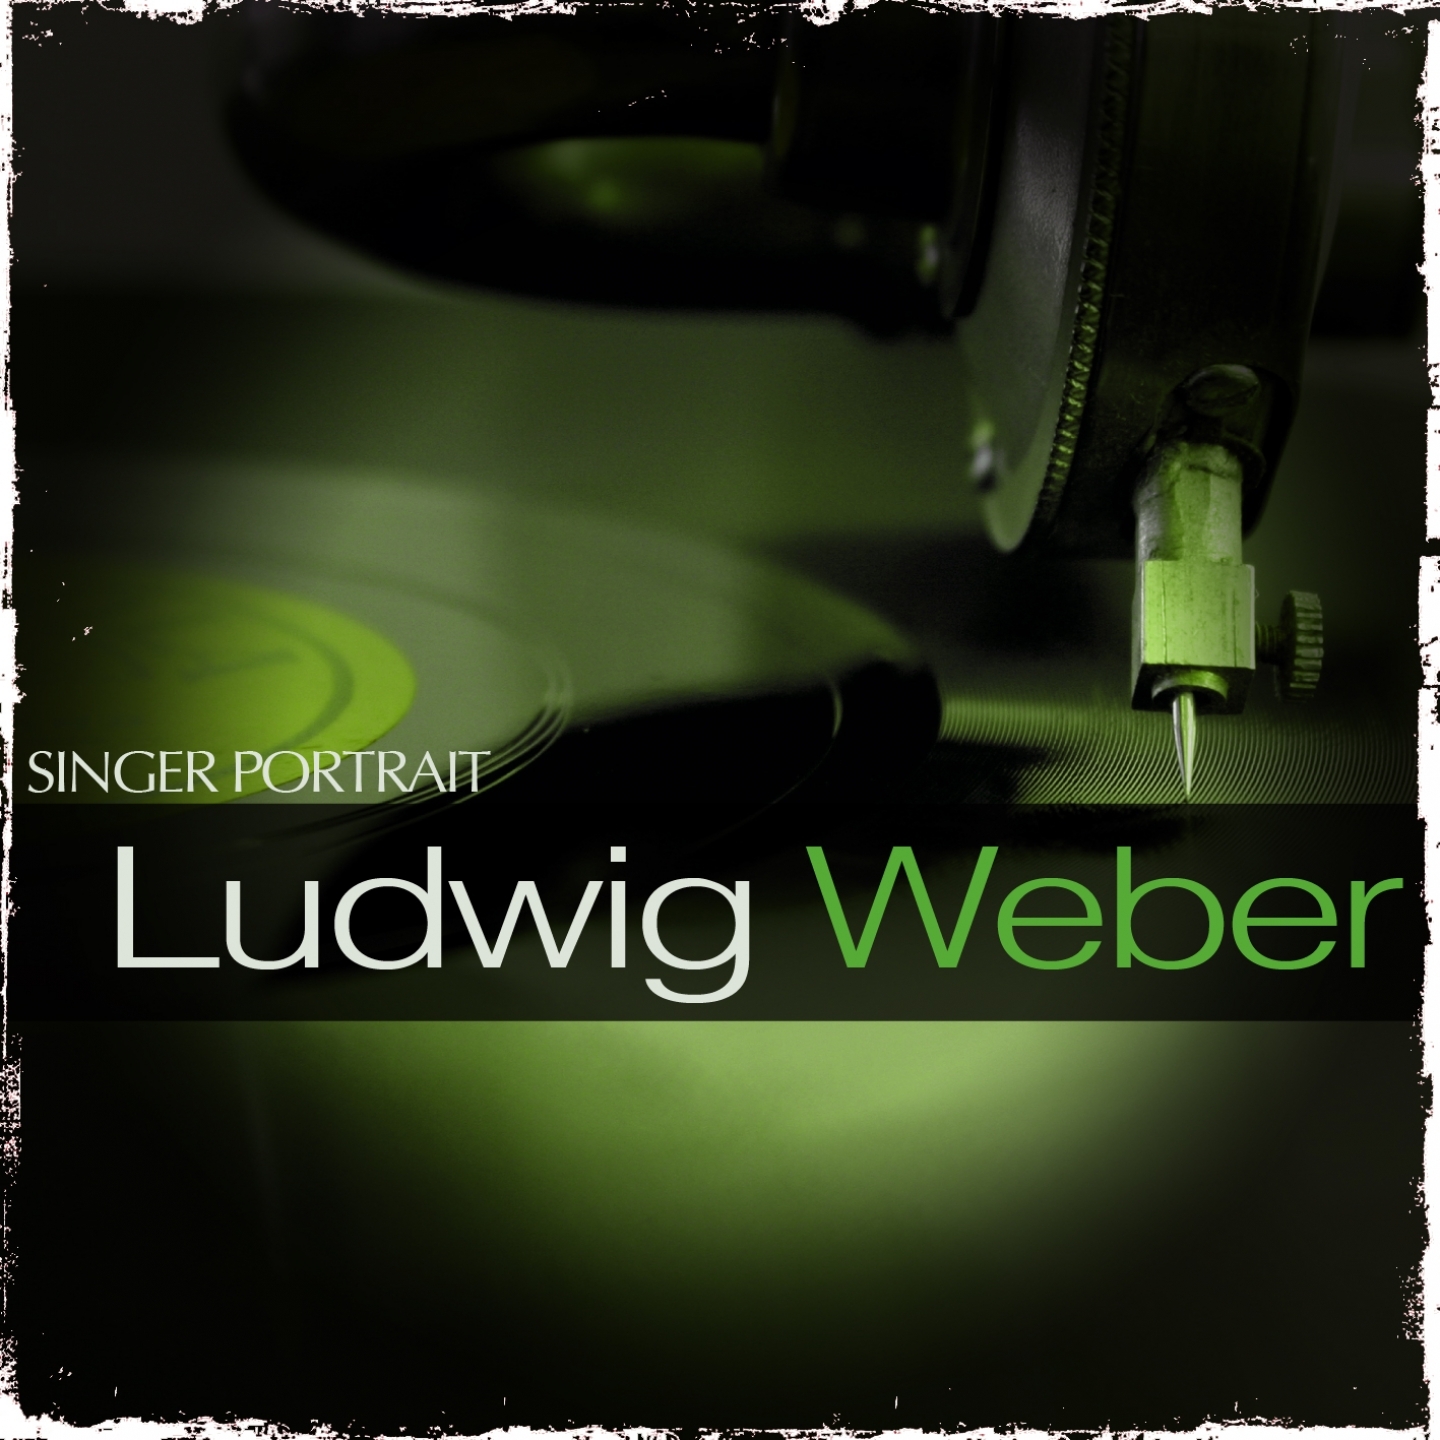 Singer Portrait - Ludwig Weber